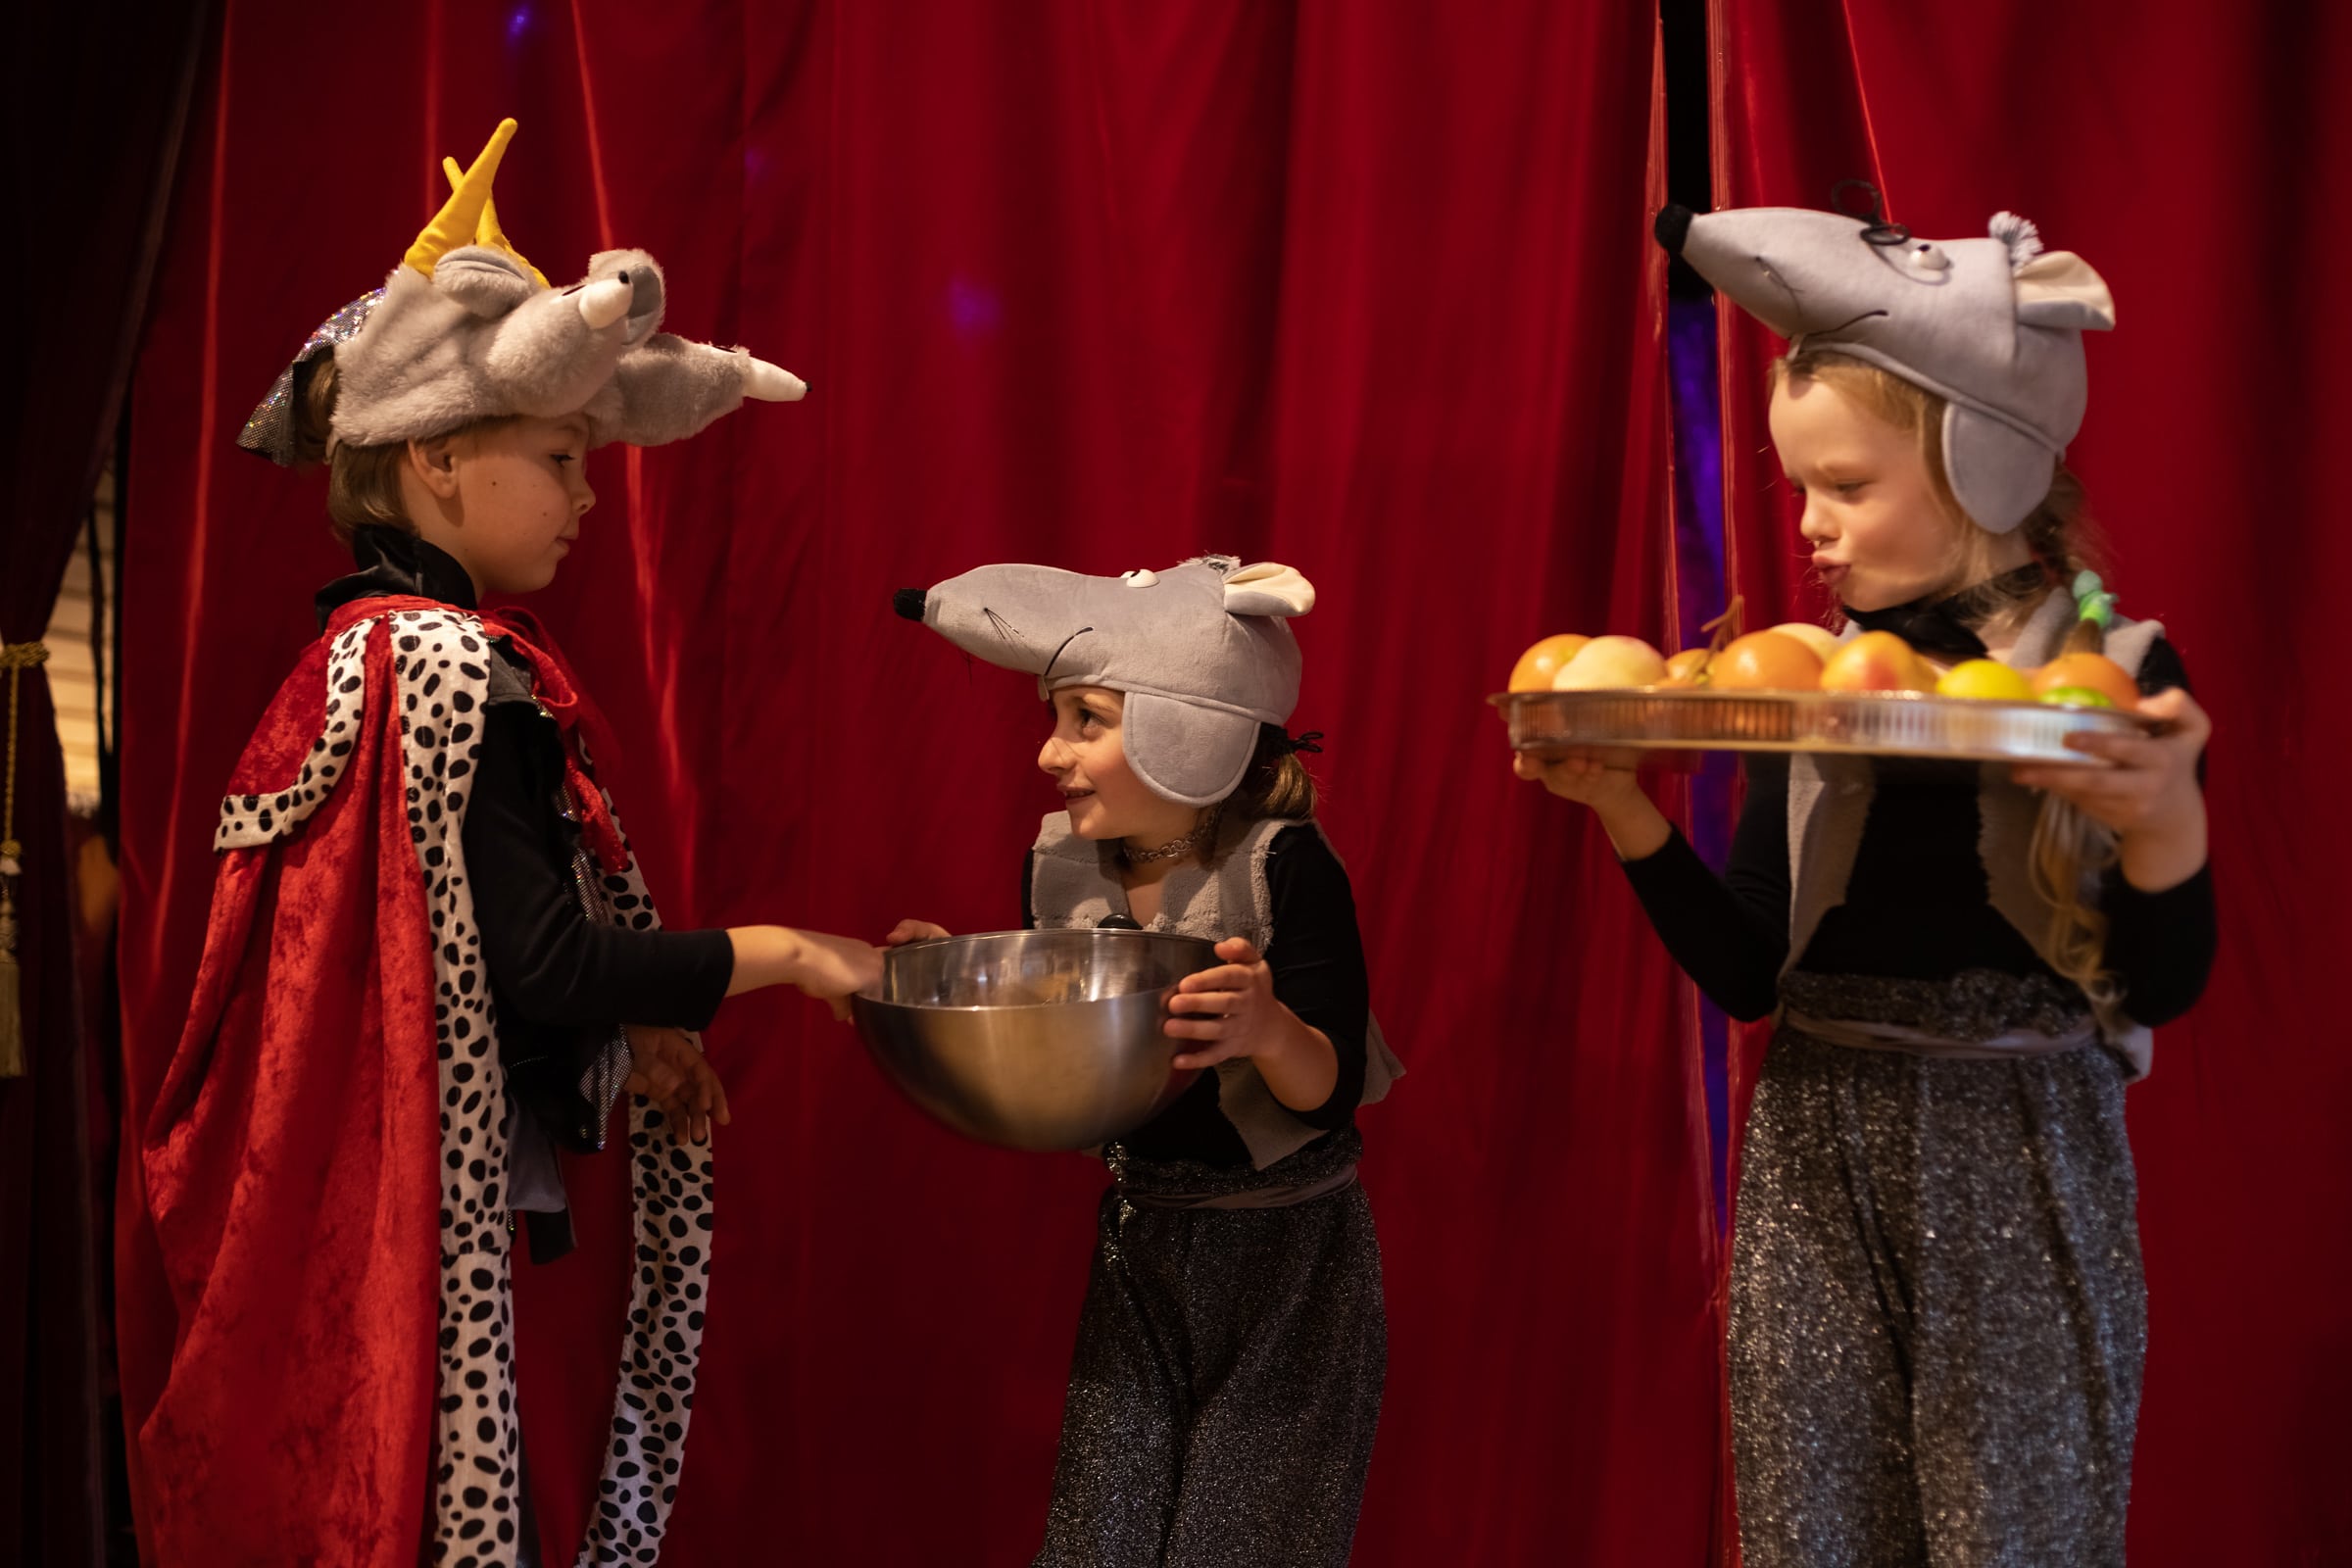 Мышки очень любят сыр, стало в мире много дыр. «Щелкунчик». Детский творческий центр «МаМуТ», Цолликерберг. 23.01.2022 г. (© mamut-center)